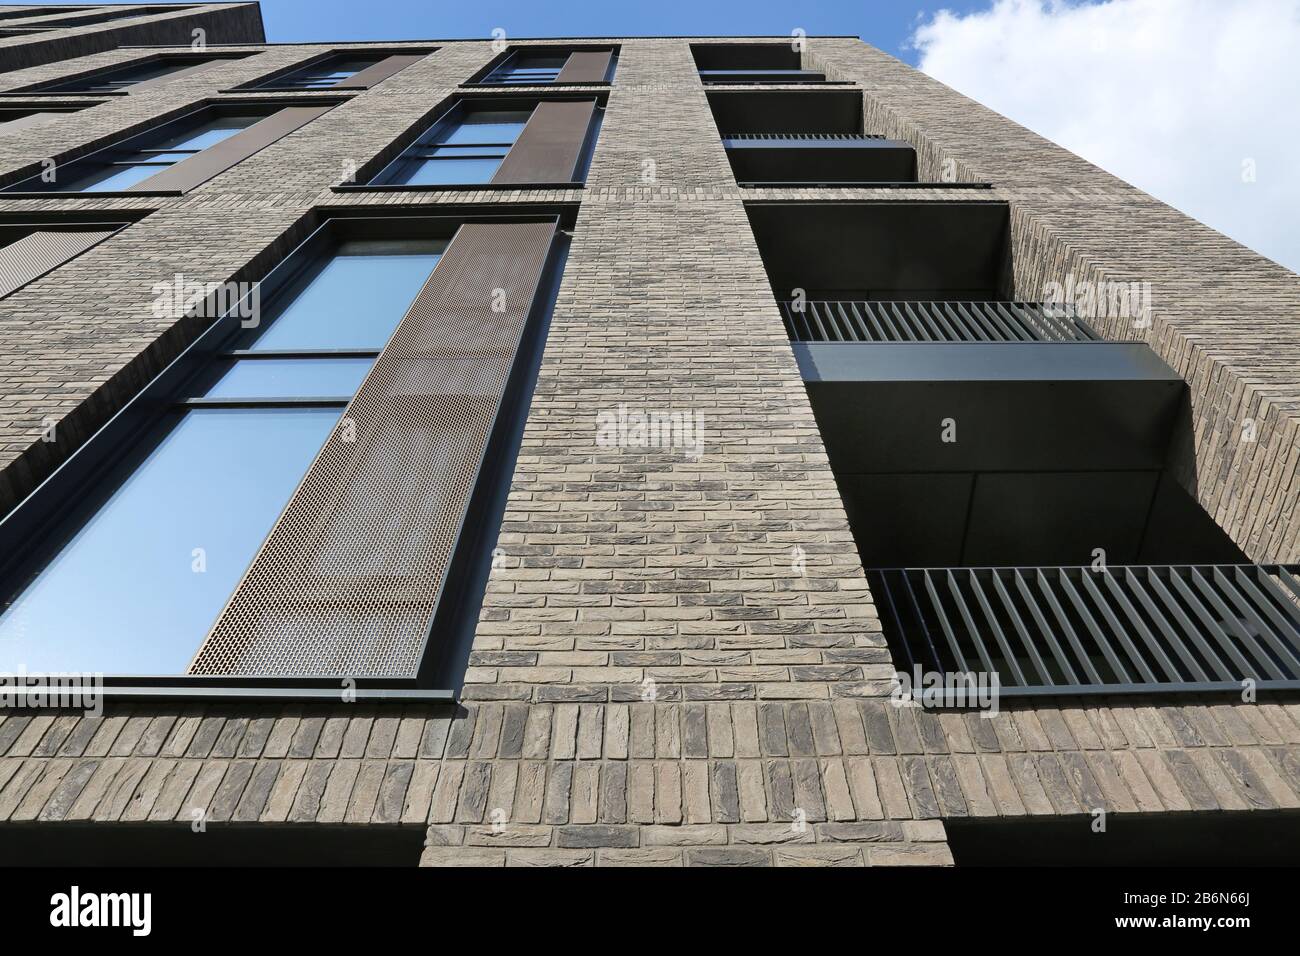 Harrington House, un nouveau bloc d'appartements de 13 étages en brique sur St Dunstans Road, Woking, Royaume-Uni. Banque D'Images